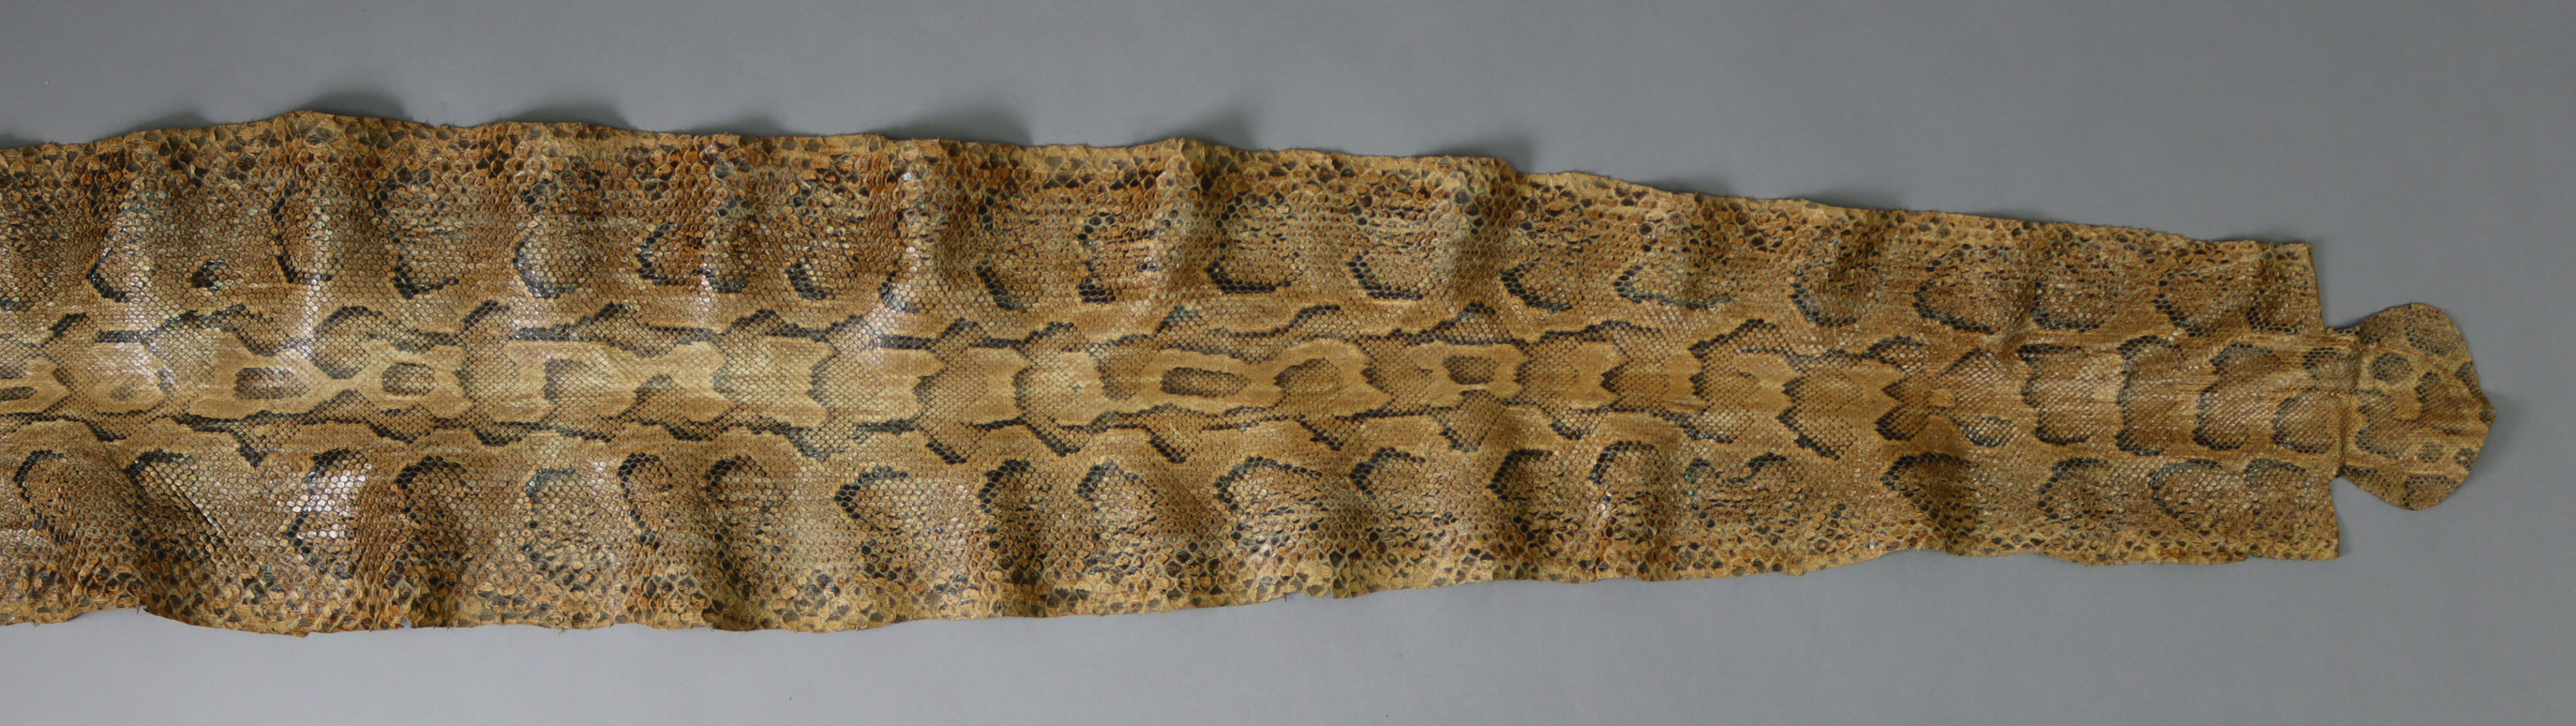 An 11’3” snake-skin. - Image 2 of 3